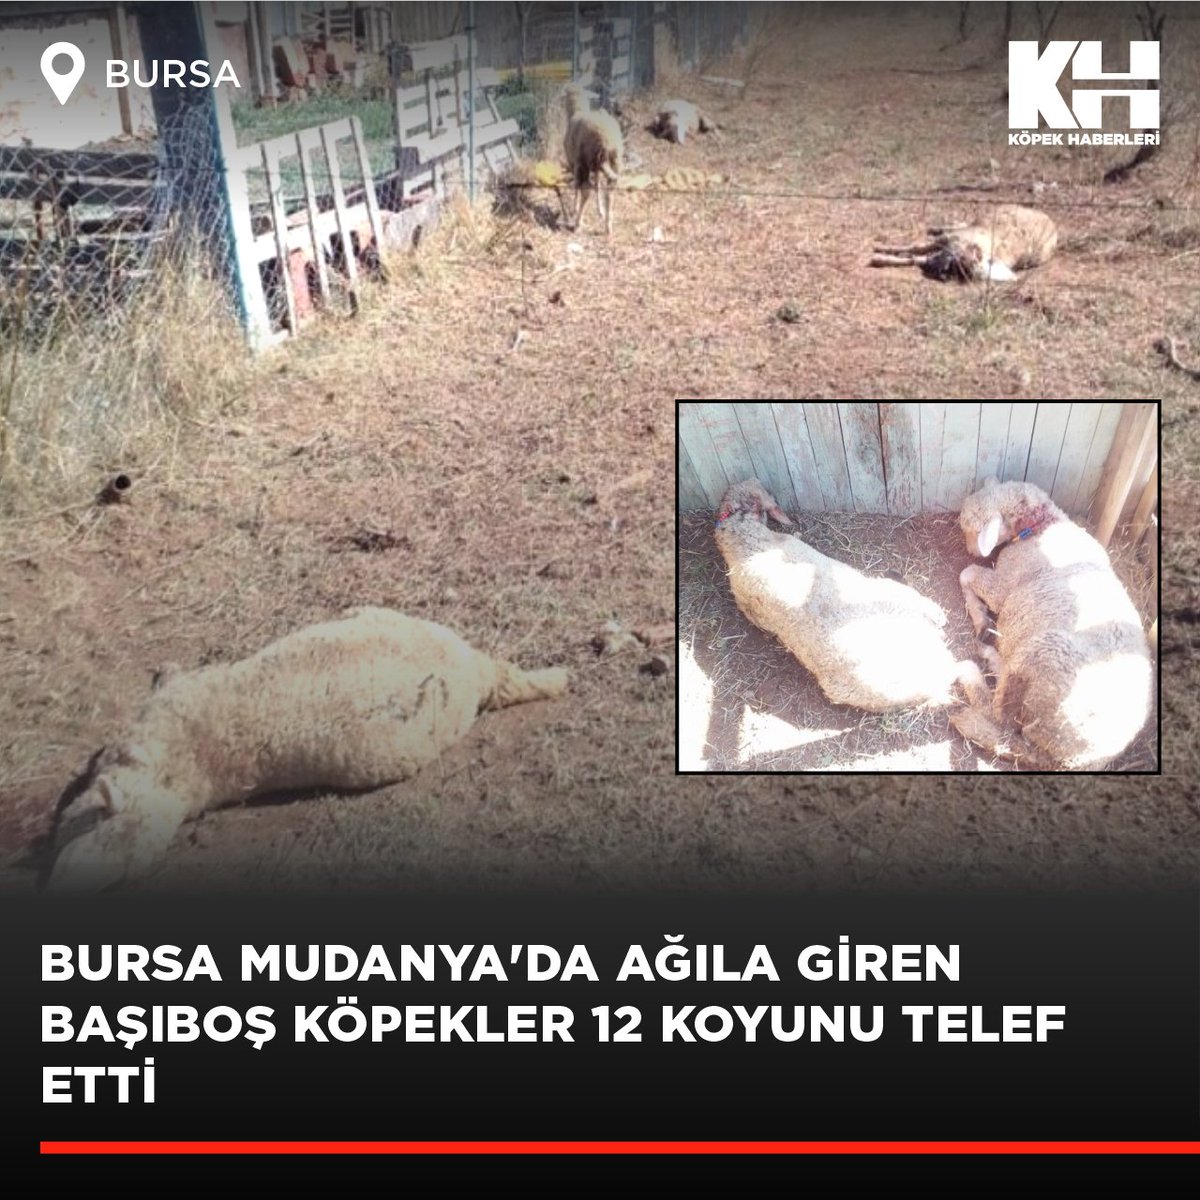 Bursa'nın Mudanya ilçesine bağlı Altıntaş Mahallesi'nde başıboş köpekler bir ağıla girerek 12 koyunu telef etti. Çiftliğin sahibi Cavit Yıldız, 8 koyunun da kayıp olduğunu belirtti. (Haber: @bursadabugun)